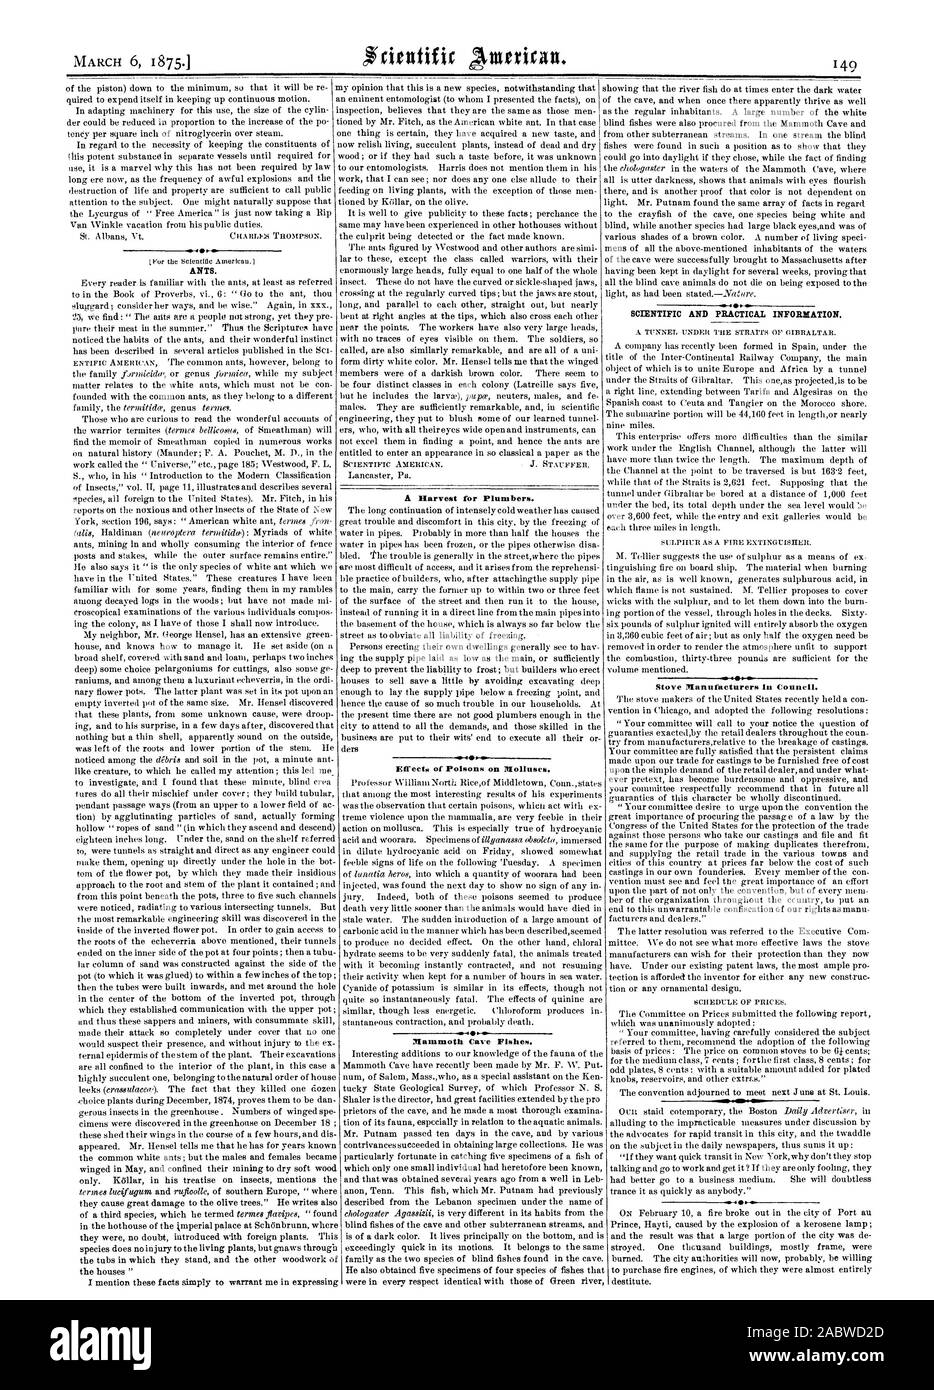 Ameisen. Praktische Herd Hersteller im Rat. 400 Auswirkungen von Giften auf Muscheln. Wissenschaftliche UND INFORMATIONEN., Scientific American, 1875-03-06 Stockfoto